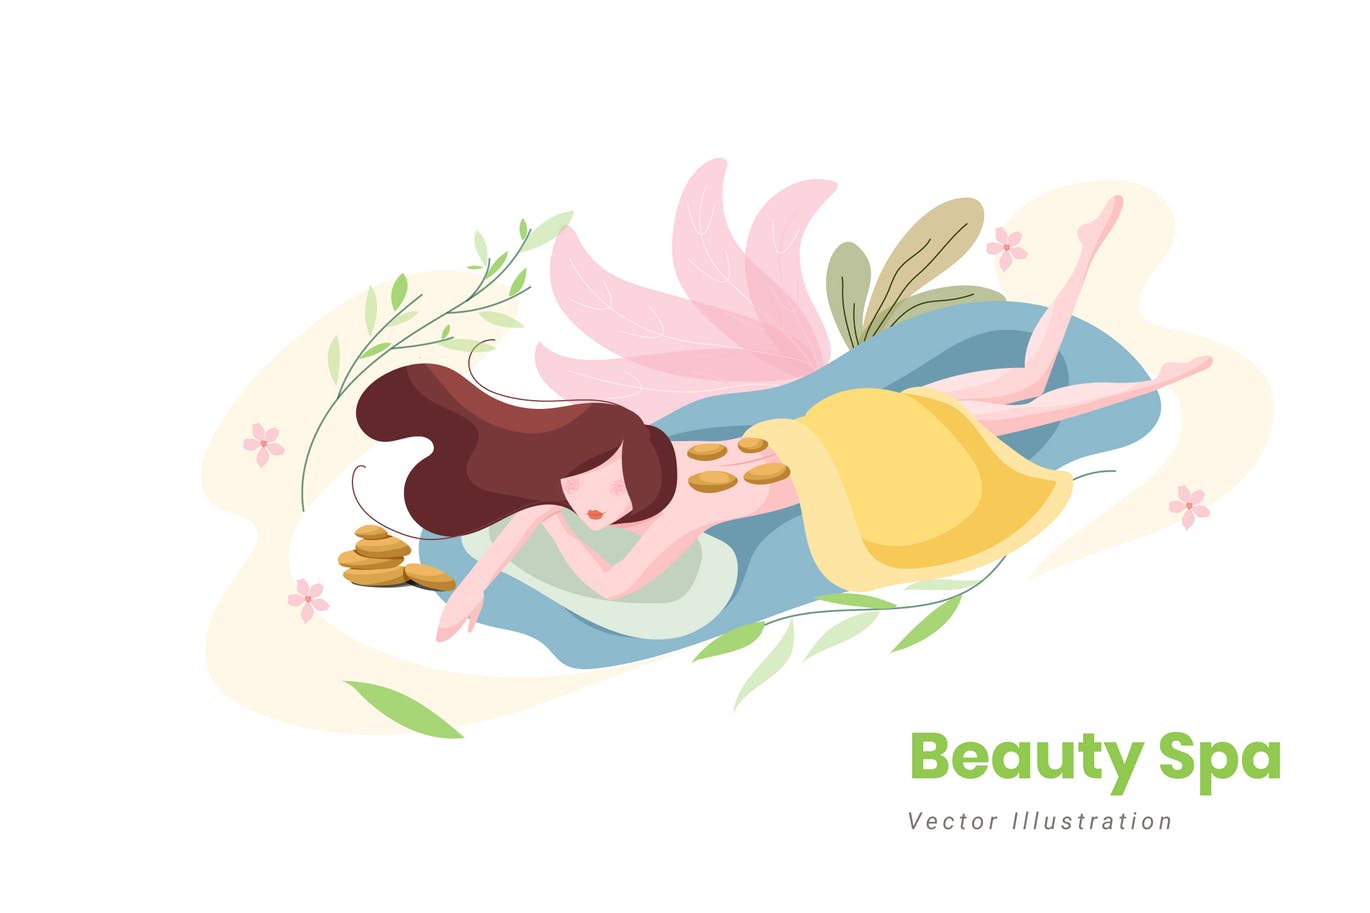 美容SPA主题矢量插画第一素材精选设计素材v9 Beauty Spa Vector Illustration插图